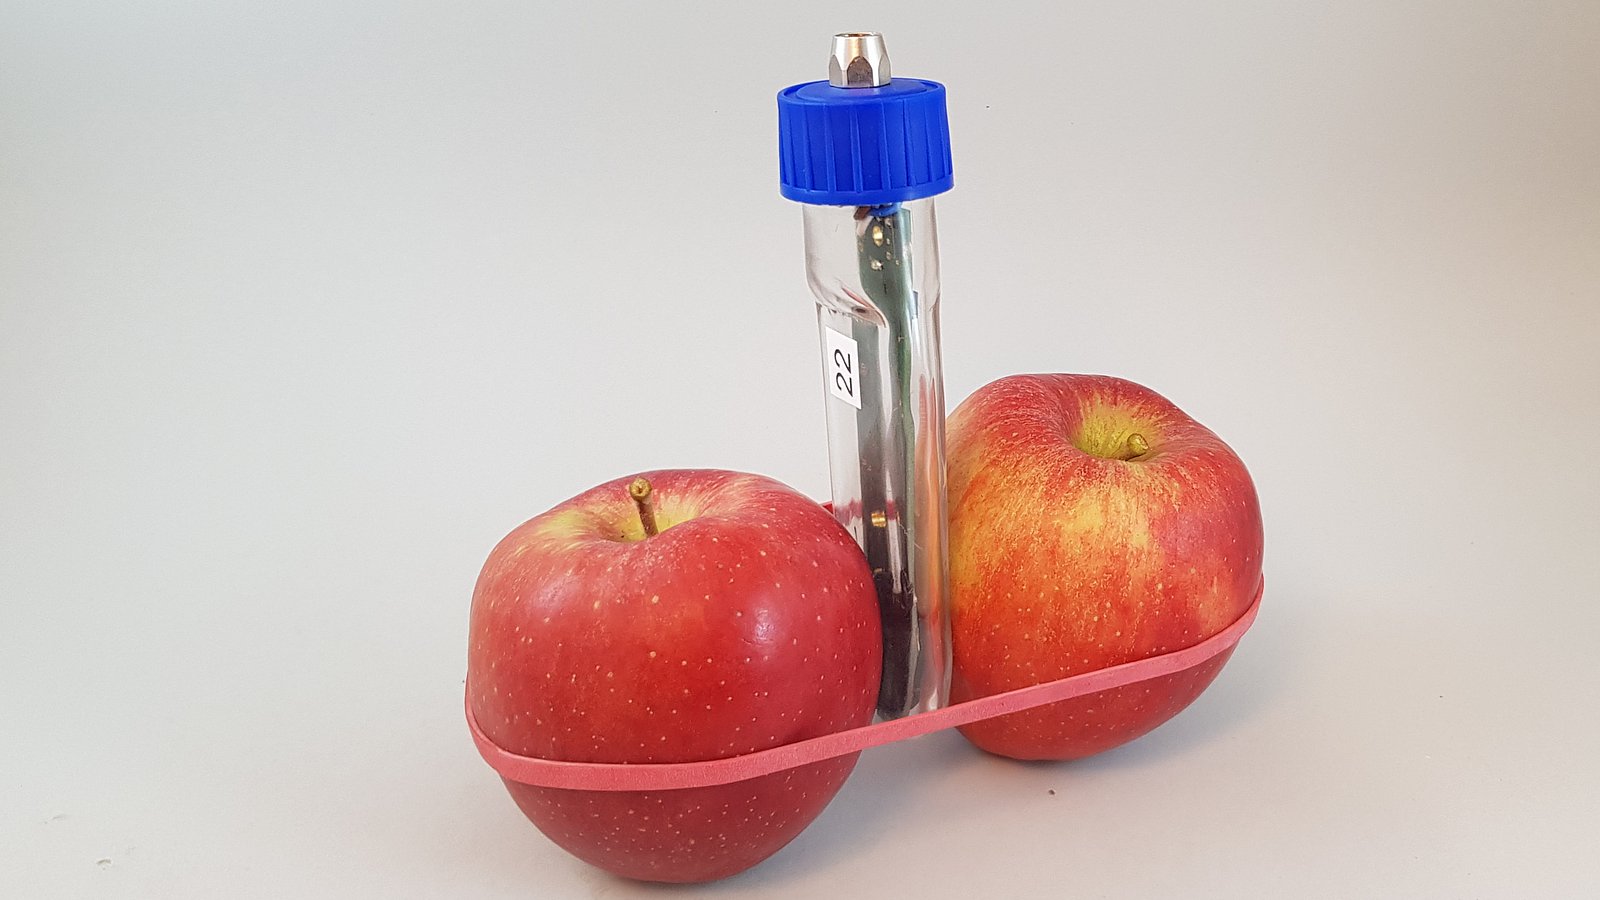 Zwei Äpfel mit einem Fluoreszenzmessgerät in der Mitte